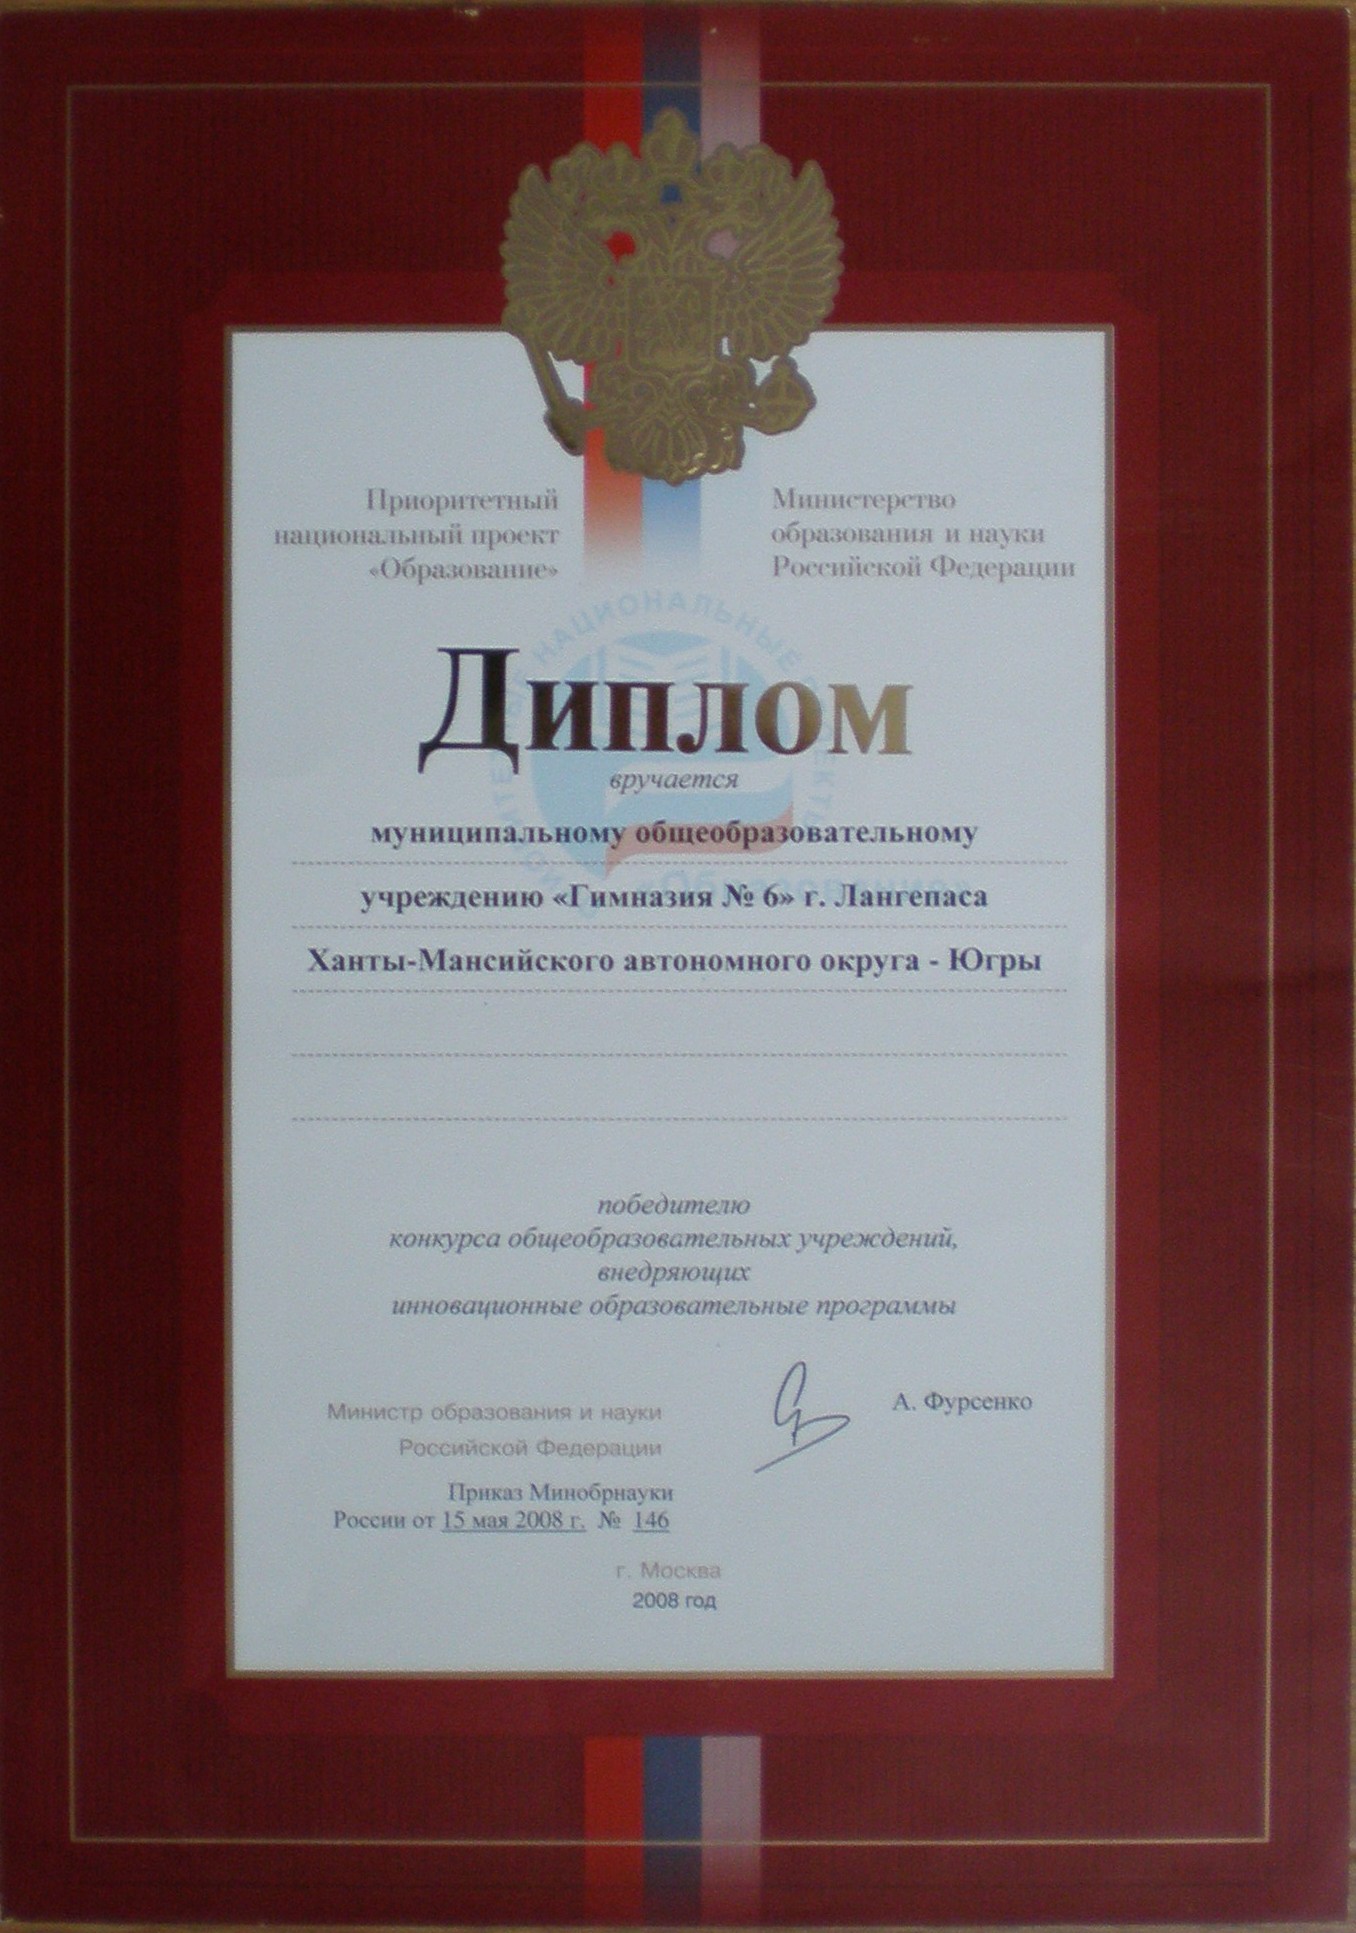 Победитель конкурса ОУ, внедряющих инновационные ОП. 15.05.2008 г.